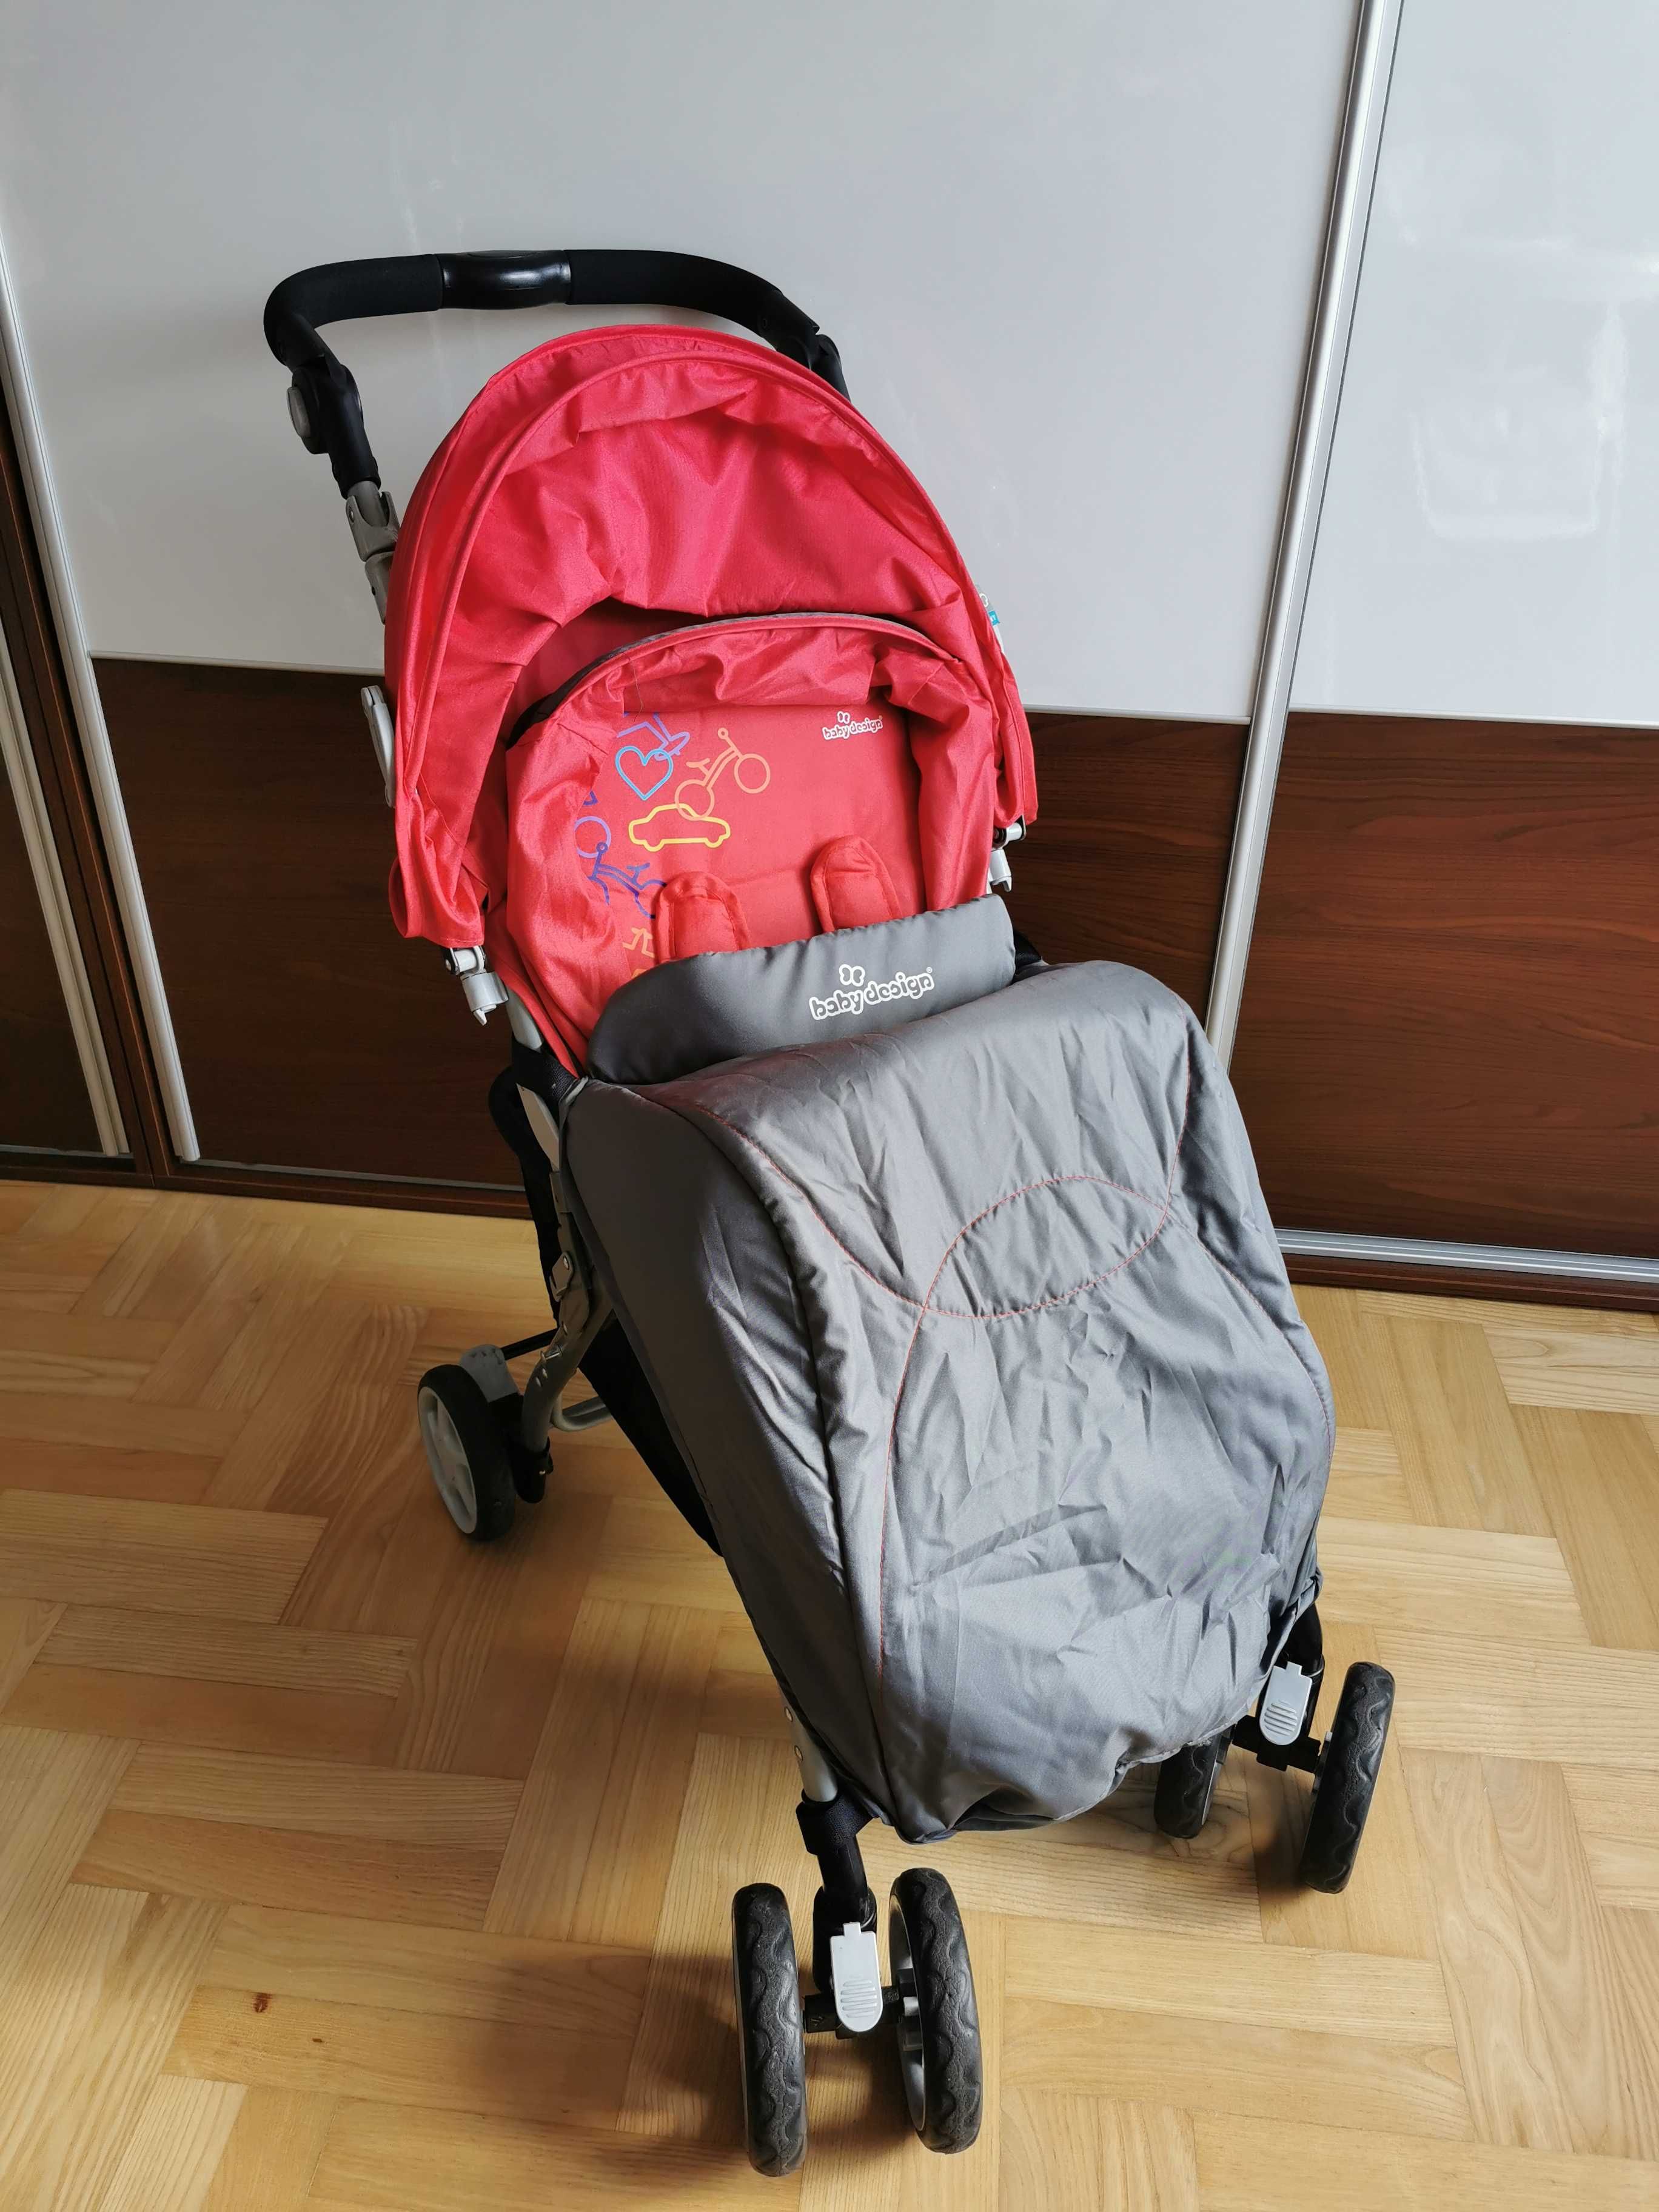 Wózek spacerowy Baby Design składany.